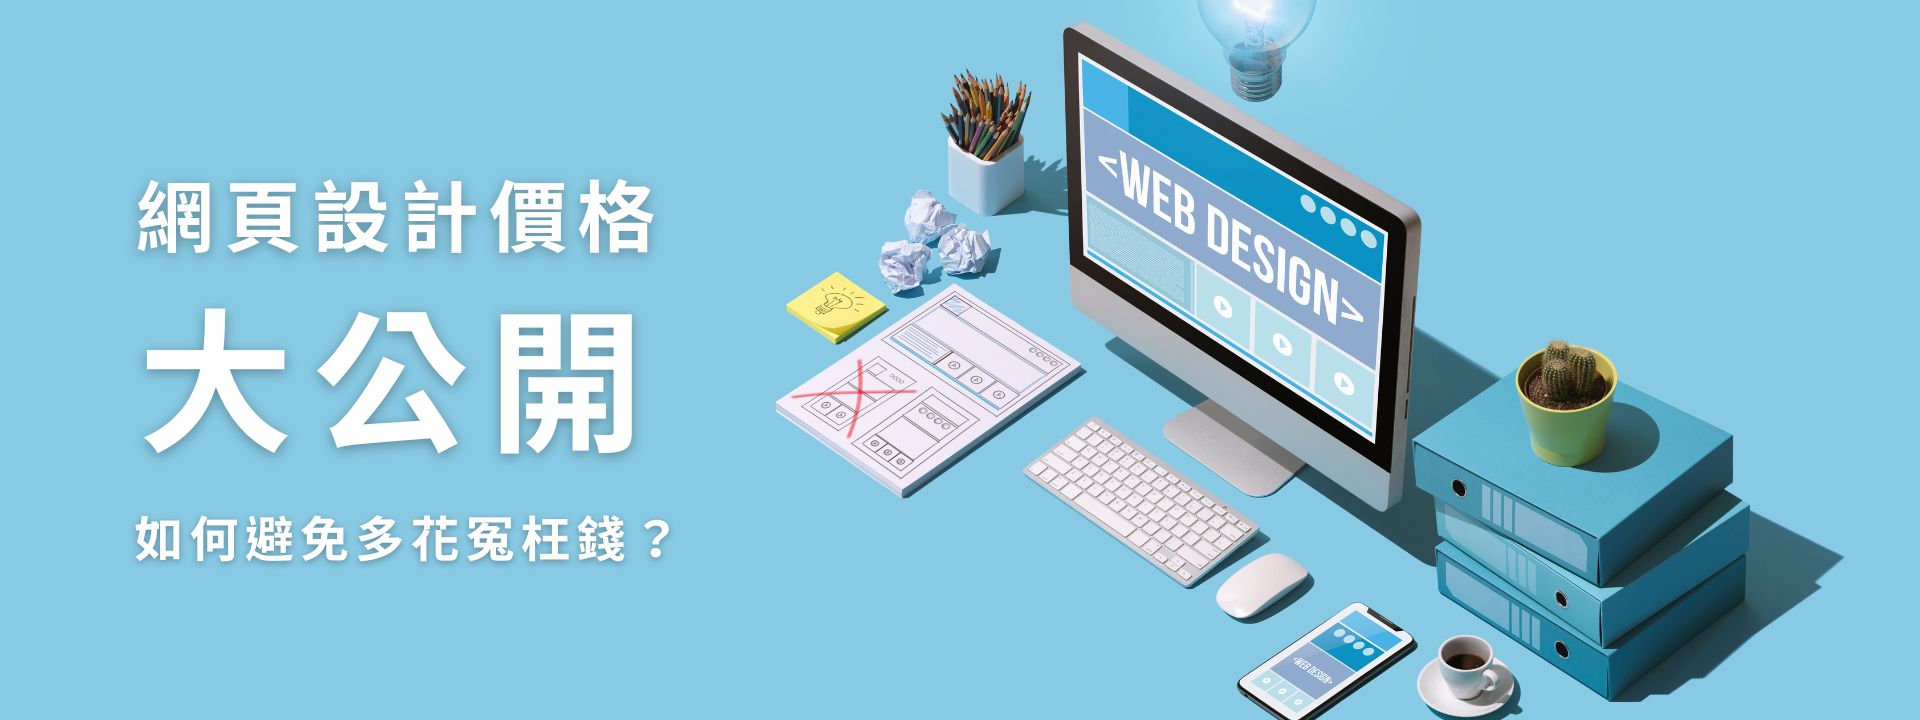 網頁設計 台南